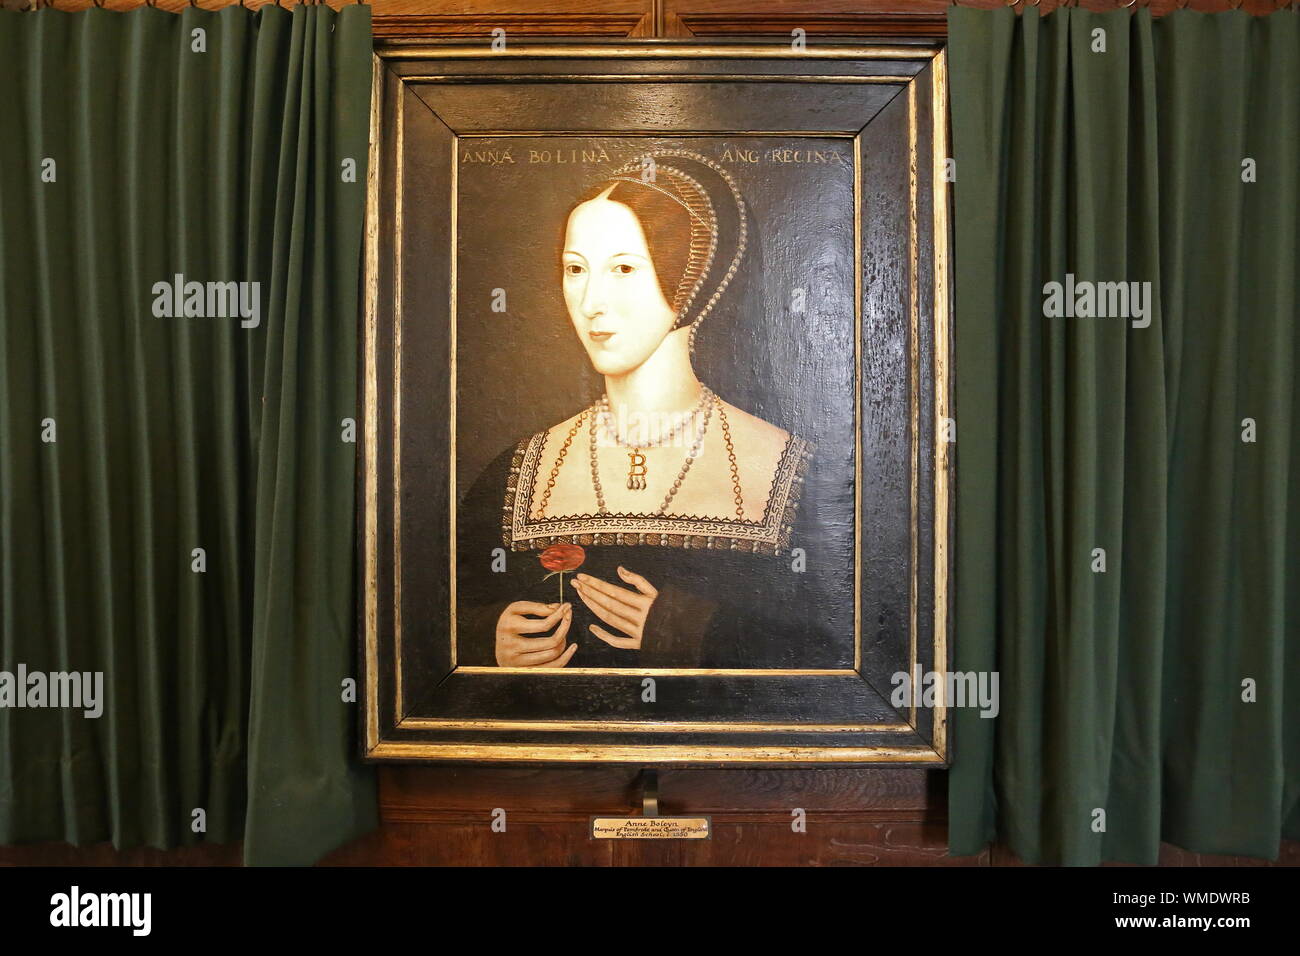 Portrait d'Anne Boleyn, longue galerie, le château de Hever, Hever, Edenbridge, Kent, Angleterre, Grande-Bretagne, Royaume-Uni, UK, Europe Banque D'Images